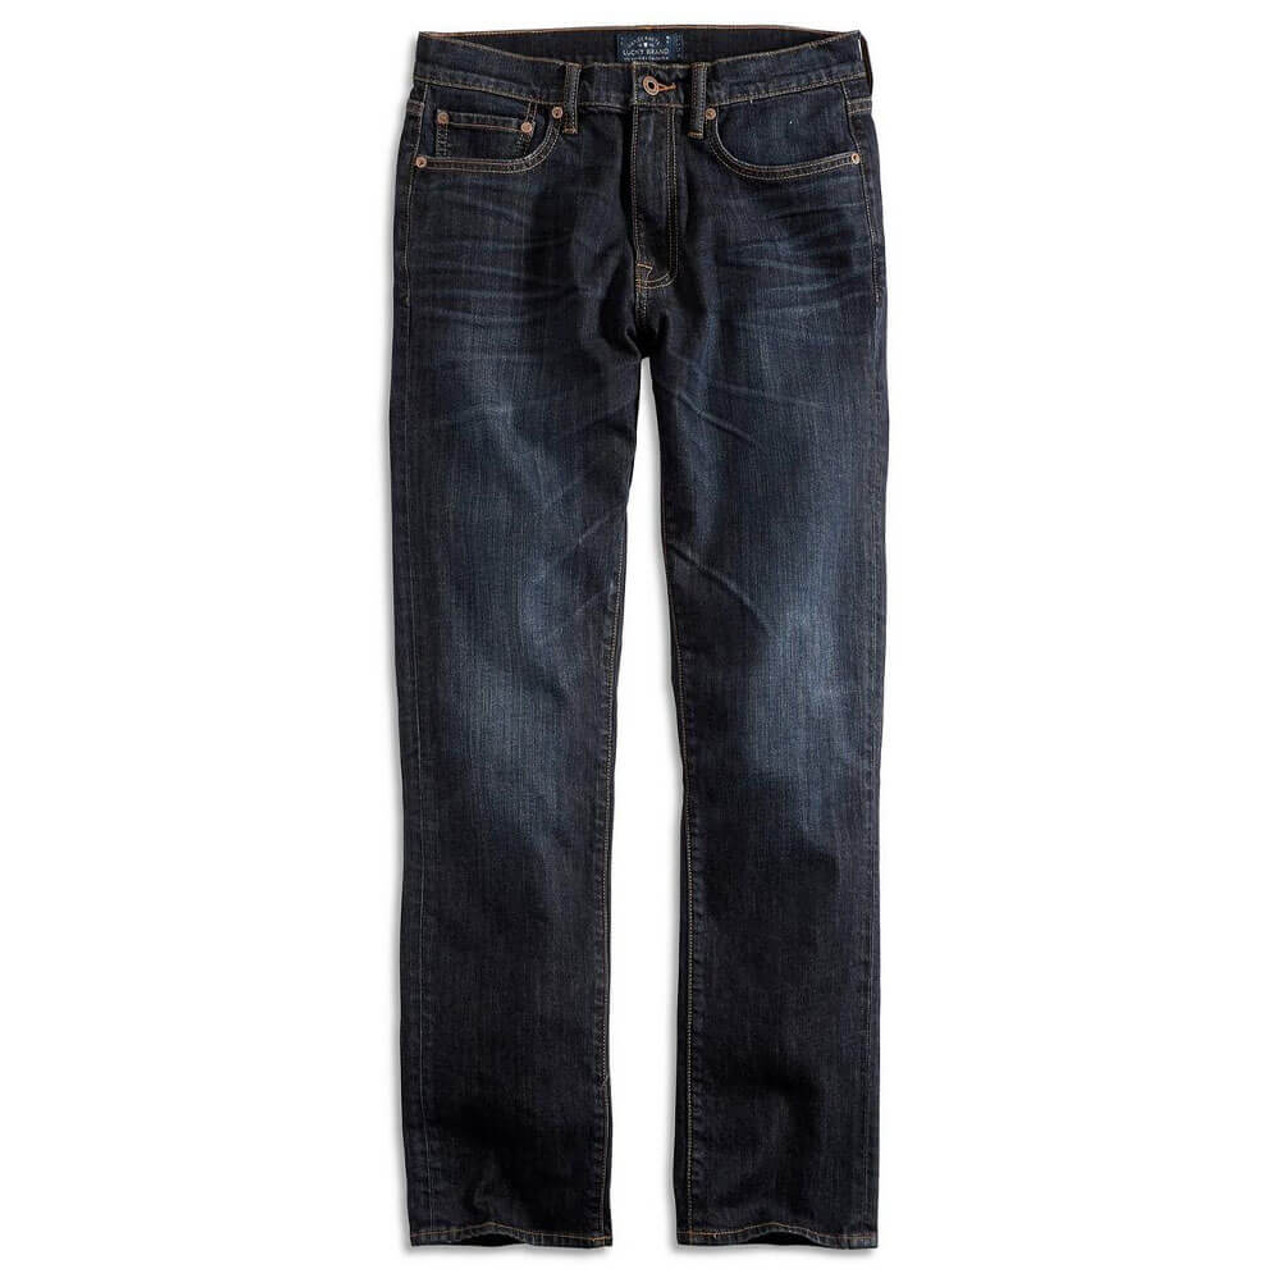 Lucky Brand 410 Athletic Slim Jeans Men's Size 38/32 Blue Denim Straight Leg